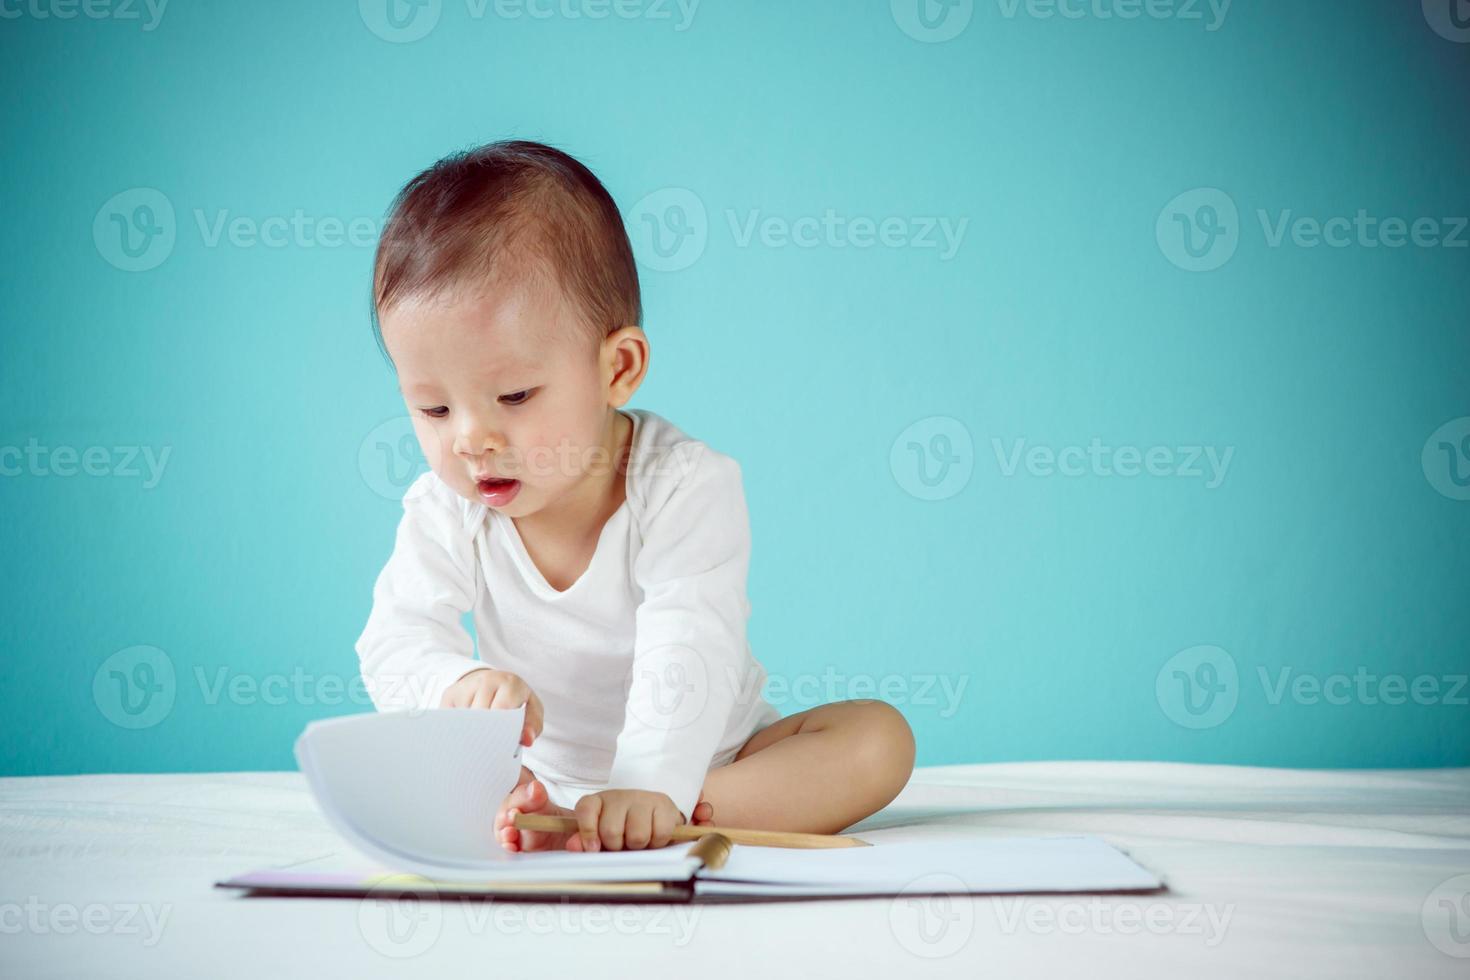 asiatisches Baby, das in einem Buch schreibt, gesundes Kind mit neuem Familienkonzept foto